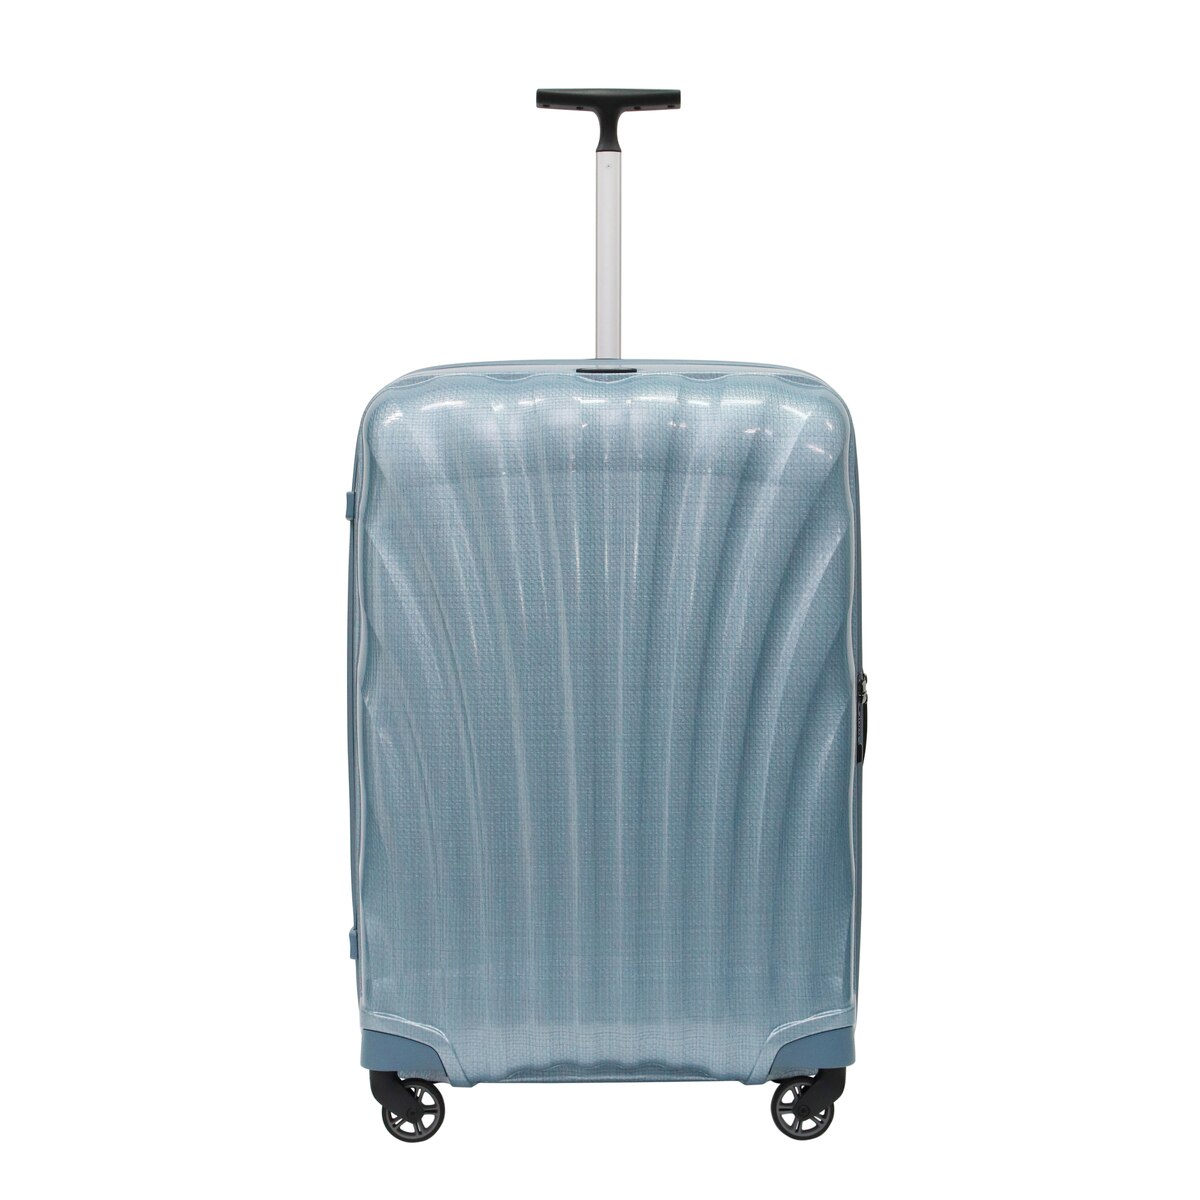 サムソナイト スーツケース コスモライト 3.0 75cm  73351 ブルー